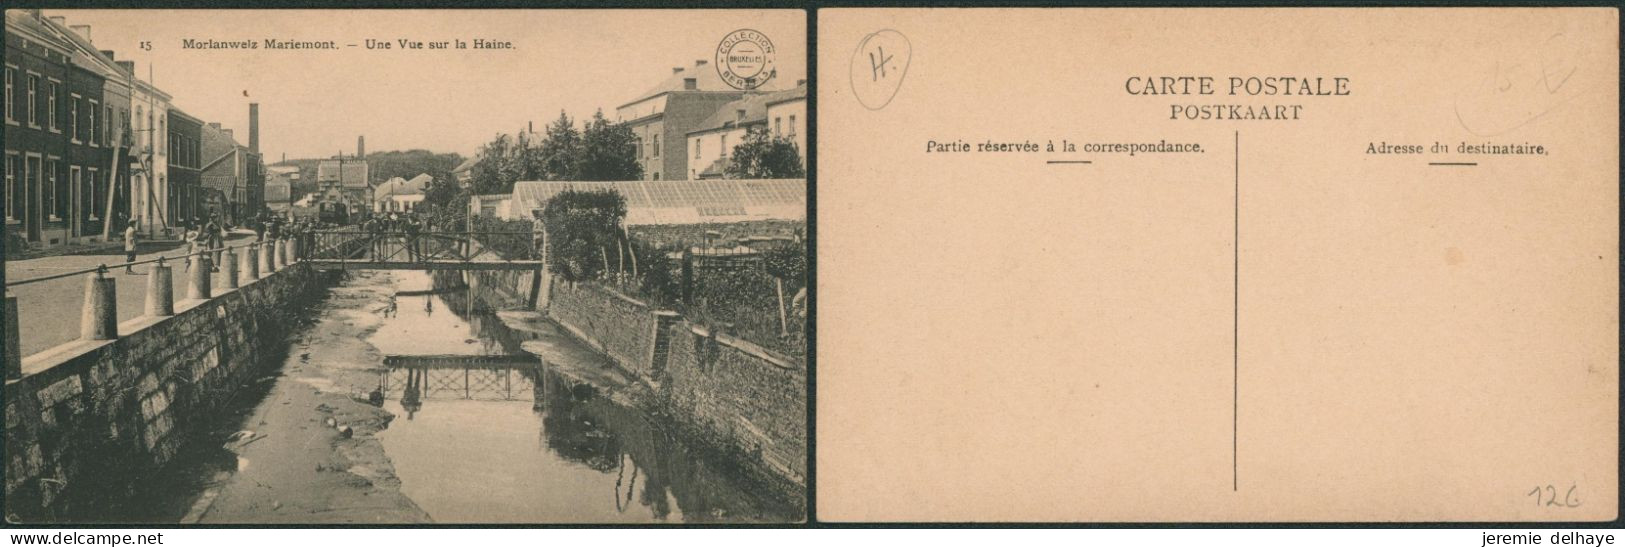 Carte Postale - Morlanwelz-Mariemont (Collection Bertels, N°15) - Morlanwelz